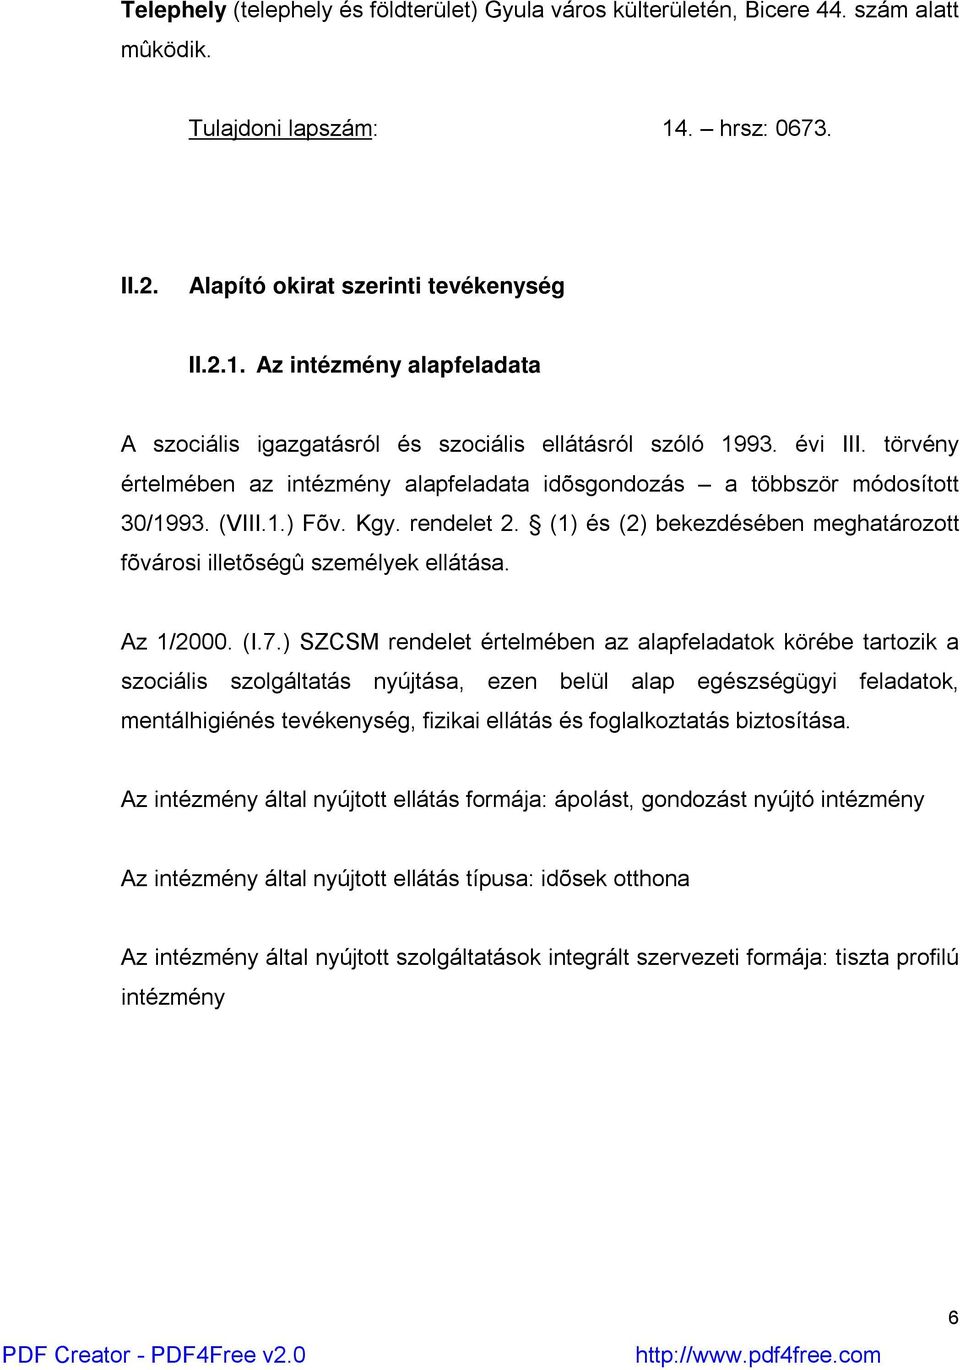 törvény értelmében az intézmény alapfeladata idõsgondozás a többször módosított 30/1993. (VIII.1.) Fõv. Kgy. rendelet 2. (1) és (2) bekezdésében meghatározott fõvárosi illetõségû személyek ellátása.